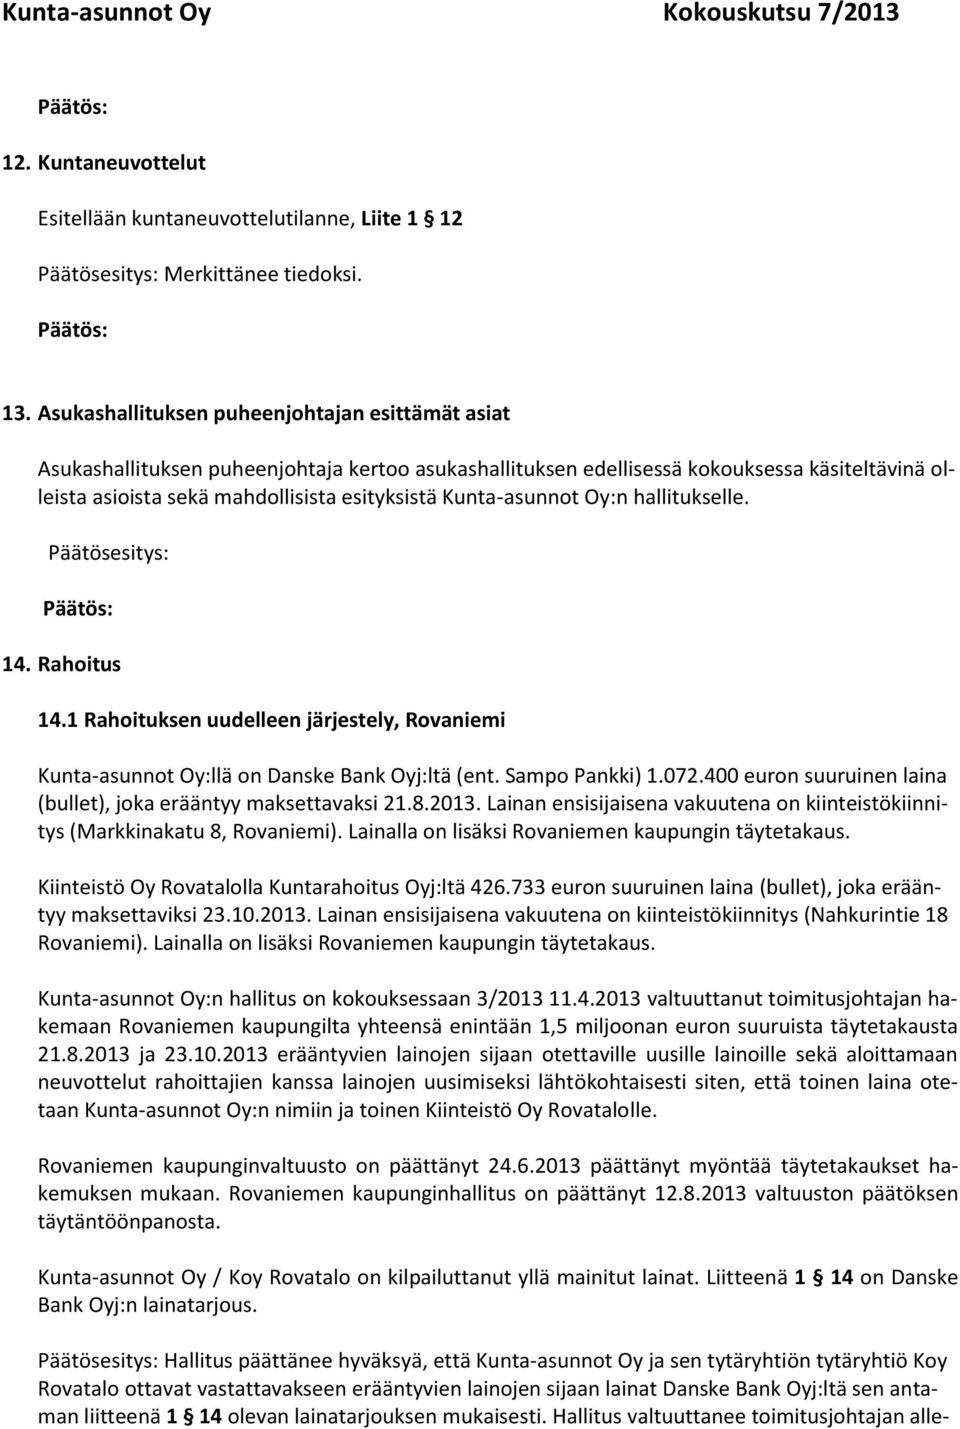 Kunta-asunnot Oy:n hallitukselle. Päätösesitys: 14. Rahoitus 14.1 Rahoituksen uudelleen järjestely, Rovaniemi Kunta-asunnot Oy:llä on Danske Bank Oyj:ltä (ent. Sampo Pankki) 1.072.